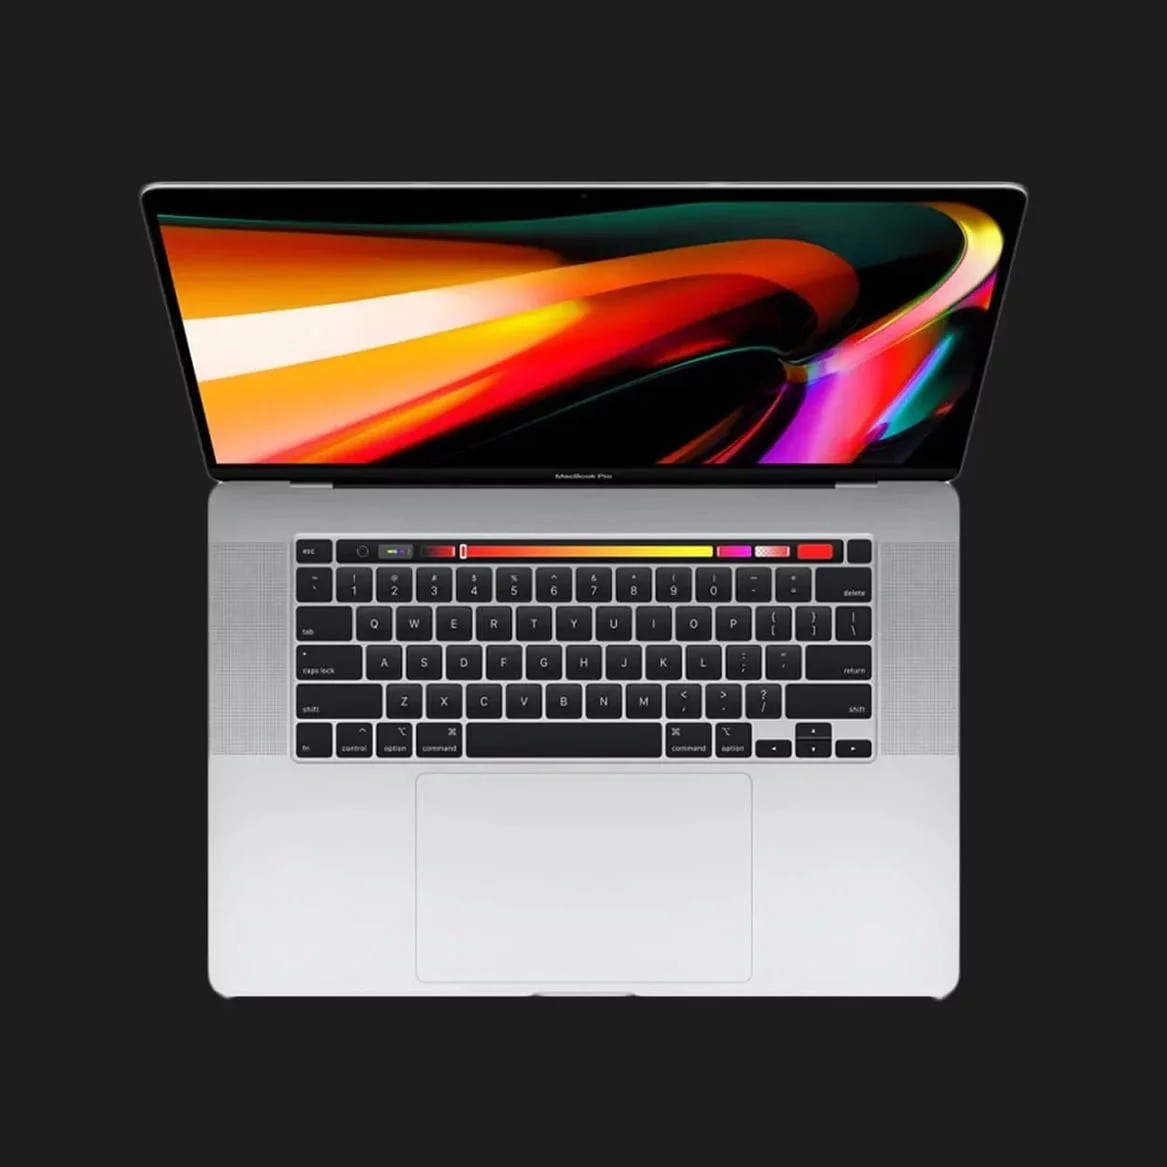 б/у Apple MacBook Pro 16, 2019 (512GB) (MVVL2) (Відмінний стан)